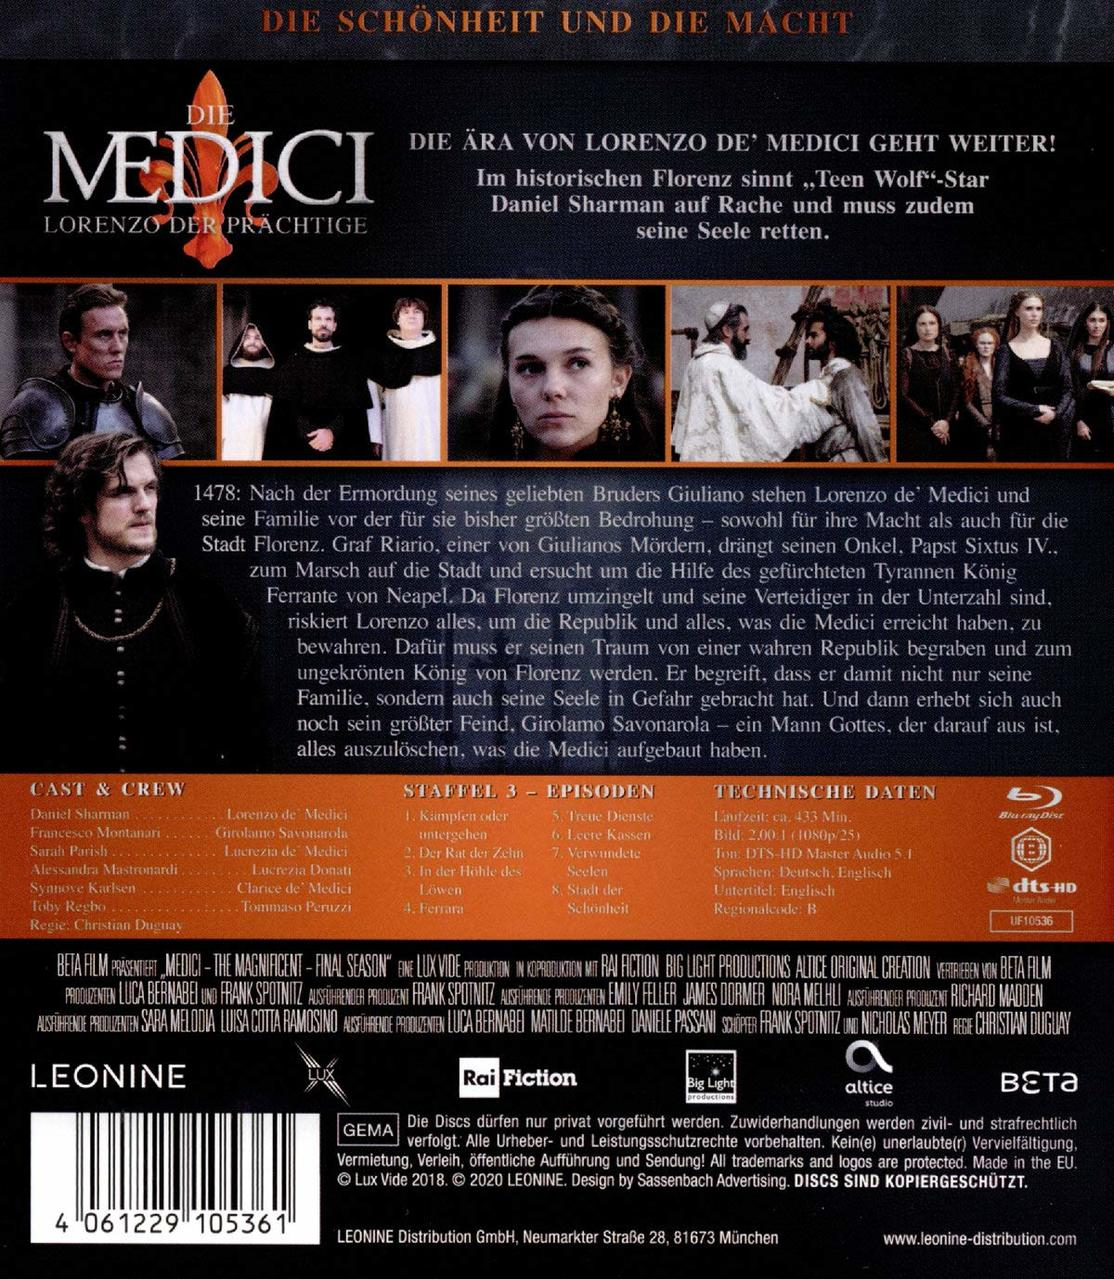 Lorenzo Medici: - 3 Die Blu-ray Prächtige der Staffel